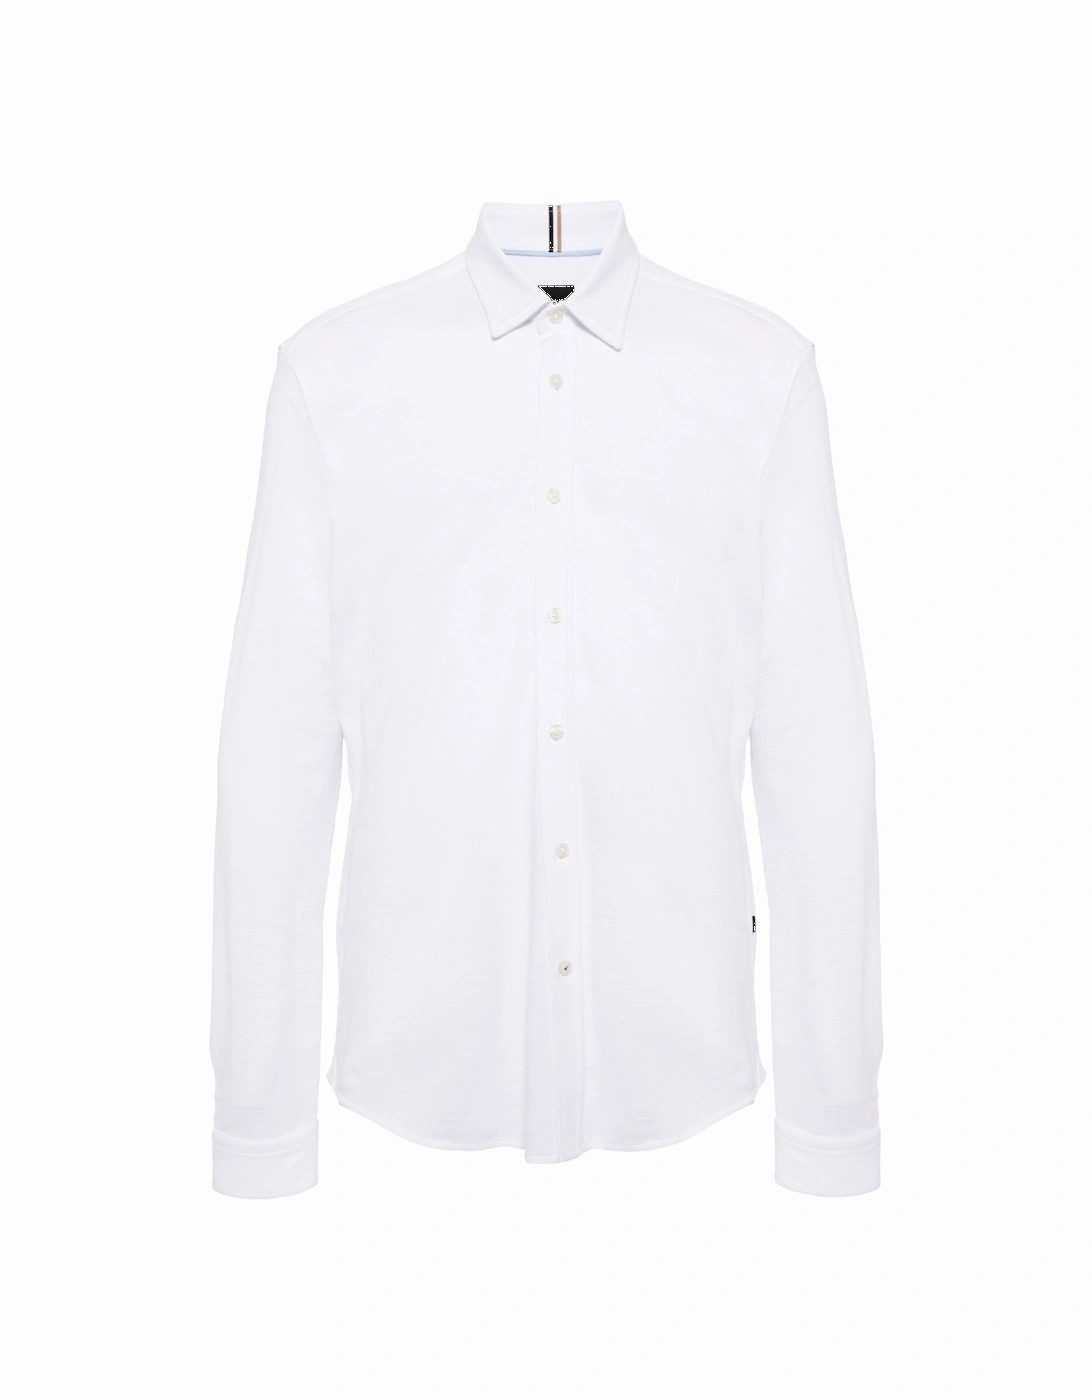 S Roan Kent Collar Shirt White, 9 of 8